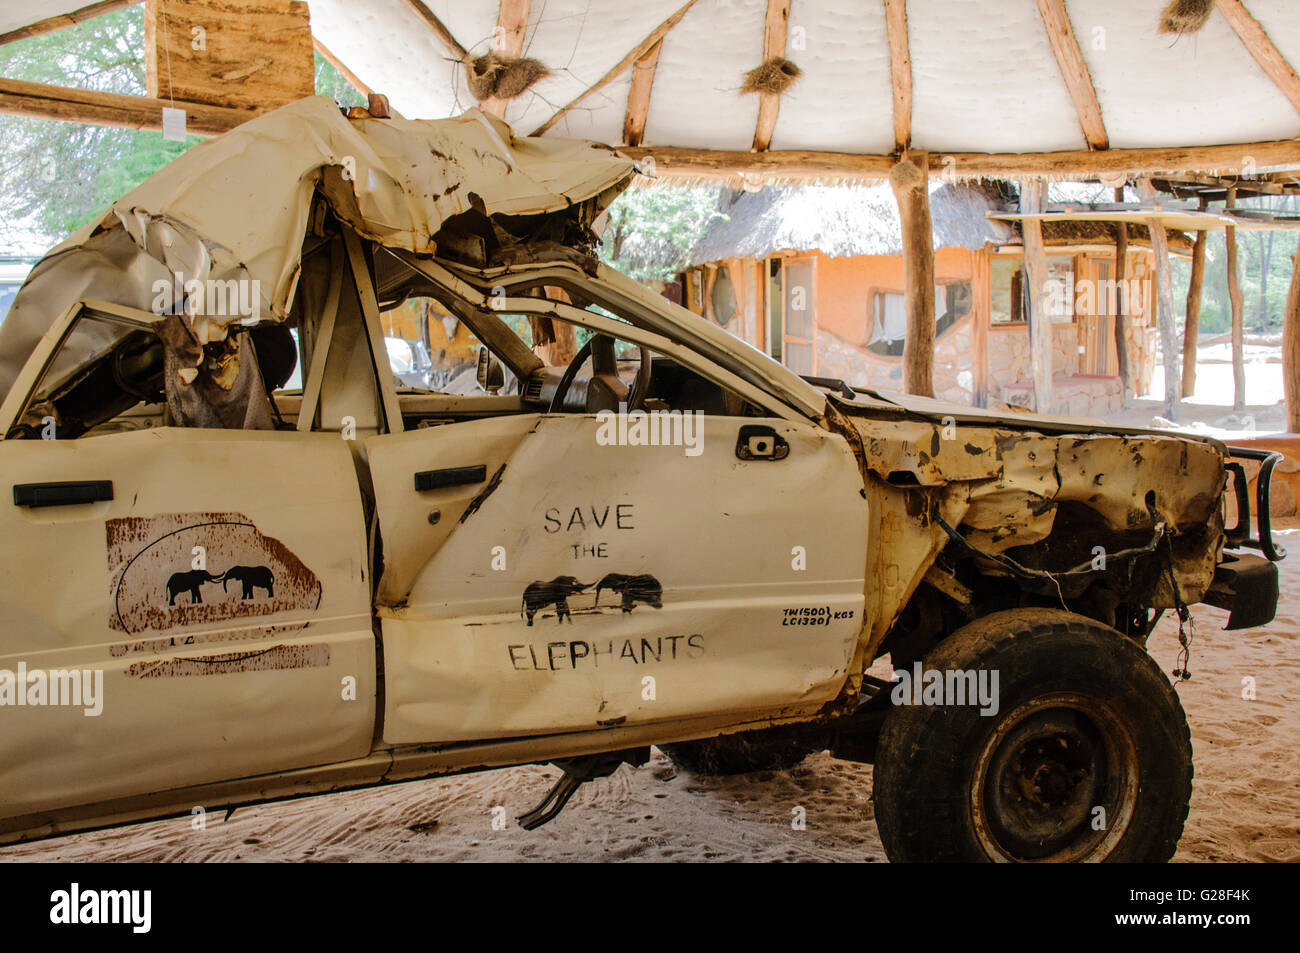 Sede de 'Save the Elephants' o STE, mostrando un vehículo que tiene en la forma de dos elefantes machos combates. Foto de stock